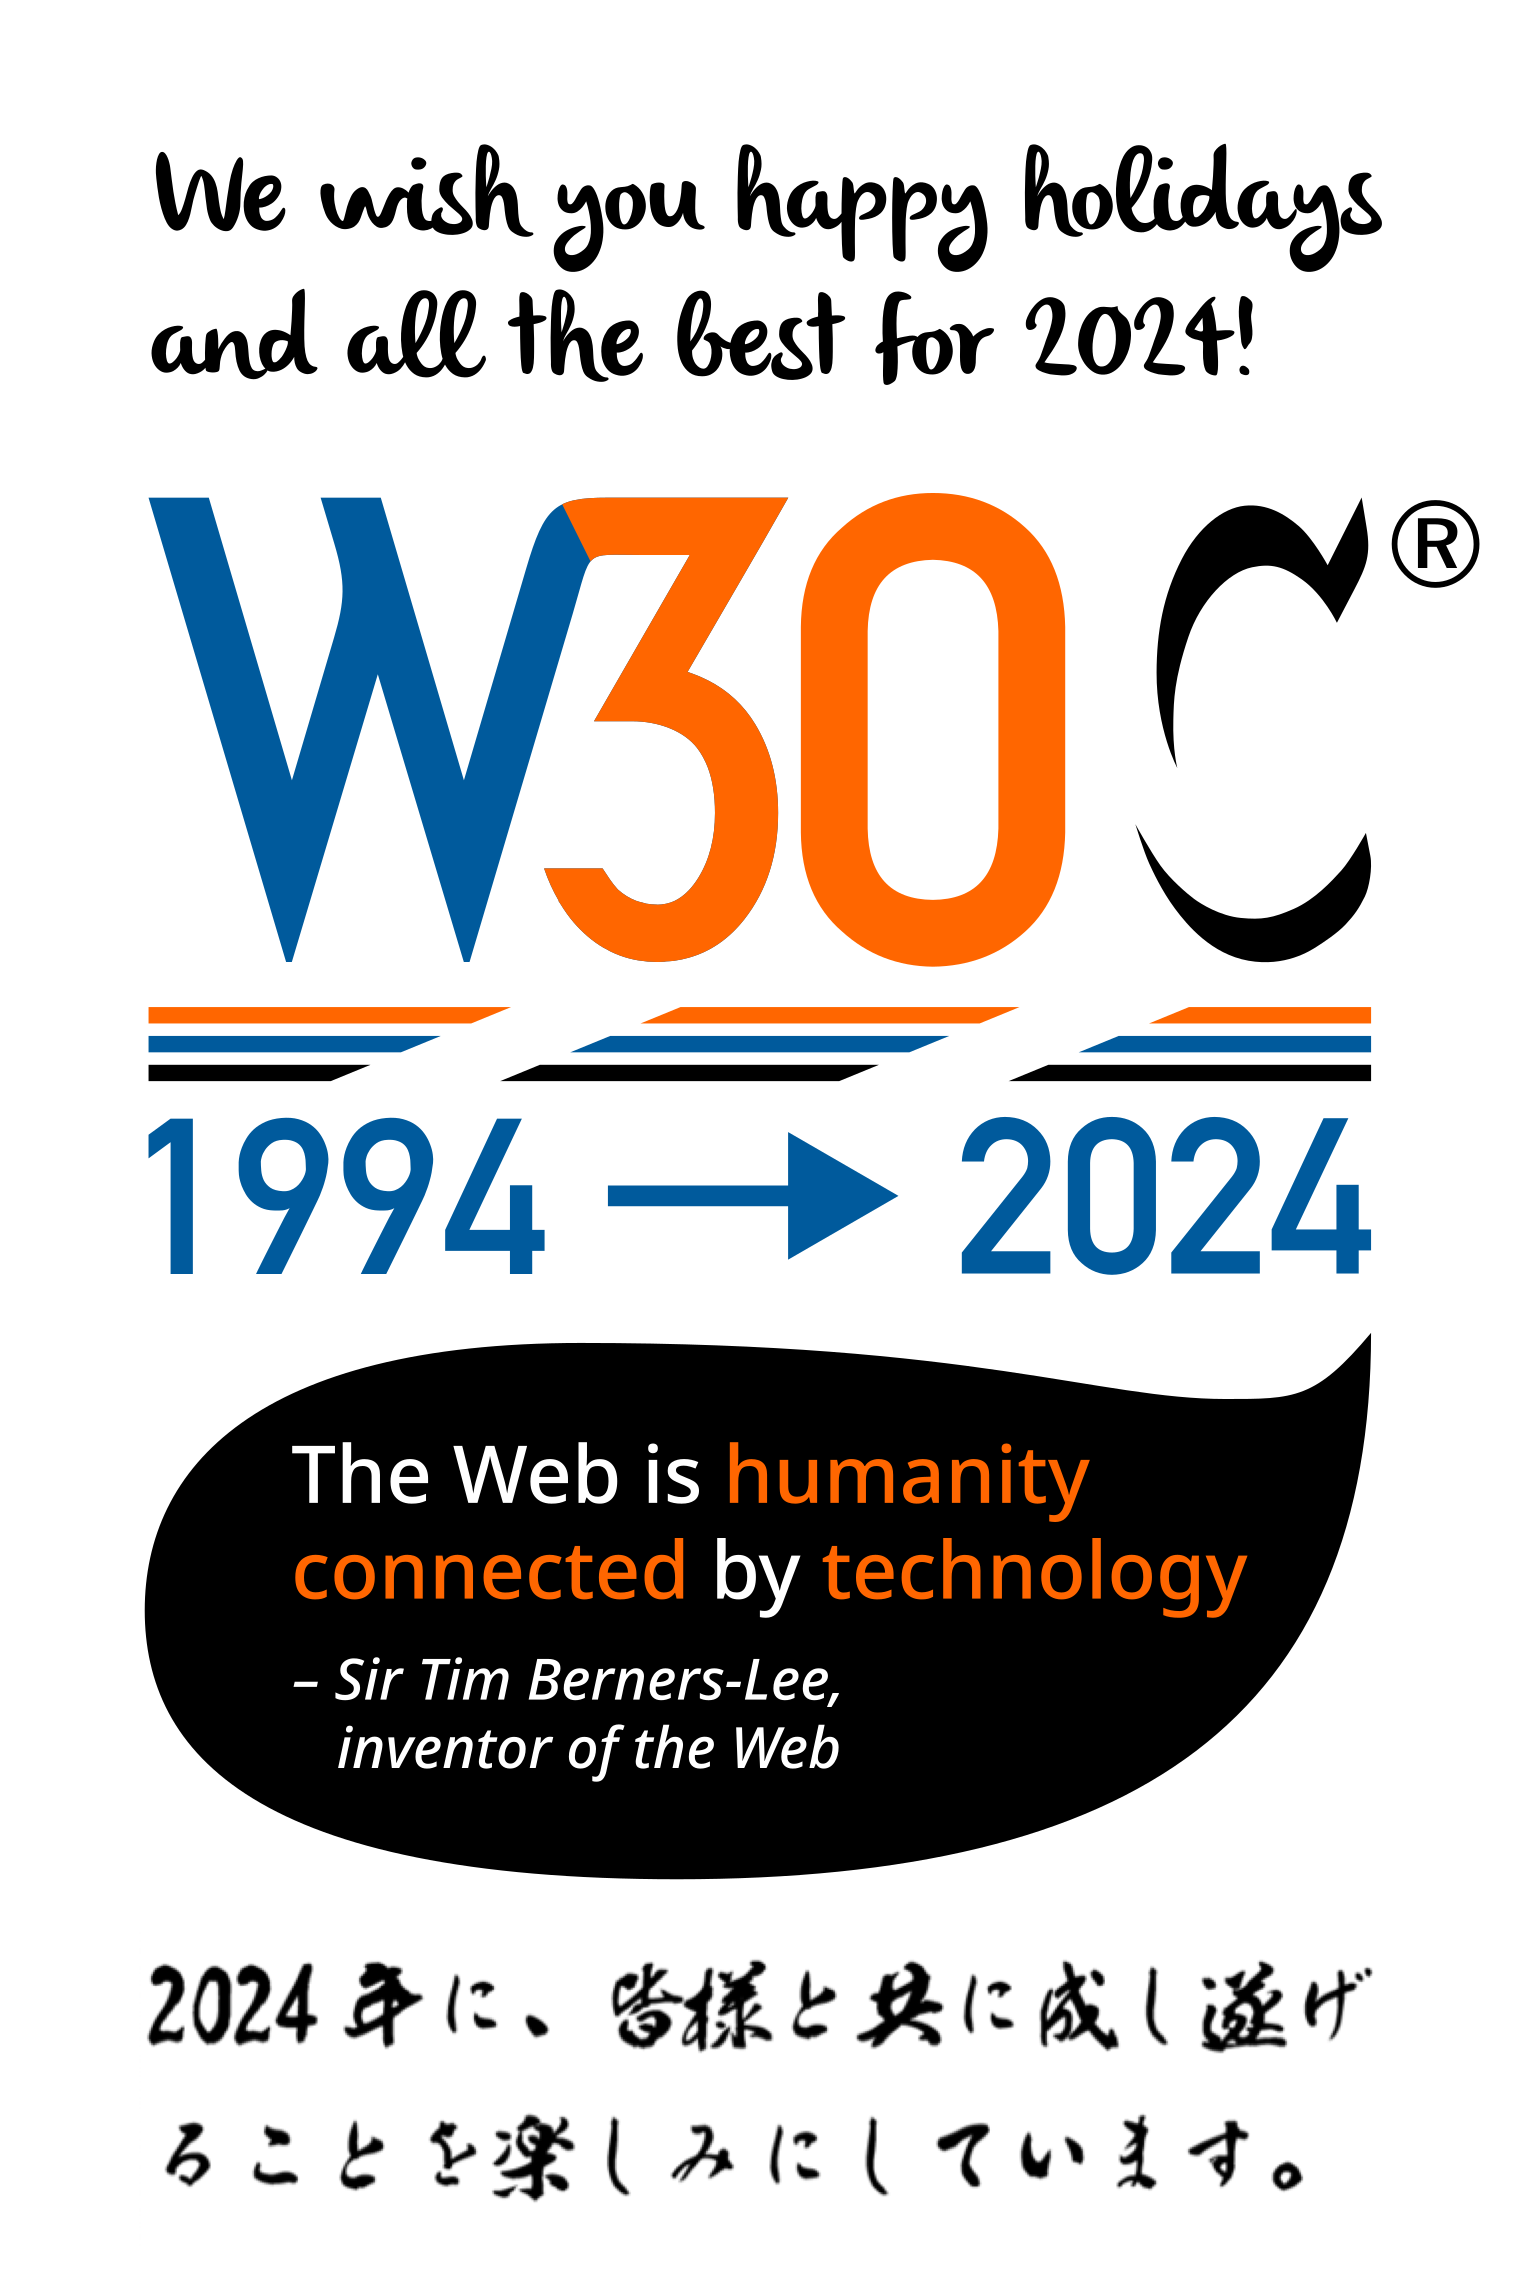 今年のデザインのご説明をしましょう。これはW3Cと1994年から2024年の30年を掛け合わせながら、ティム・バーナーズ＝リーの言葉「ウェブ技術で人々をつなぐ」ことを表現しています。